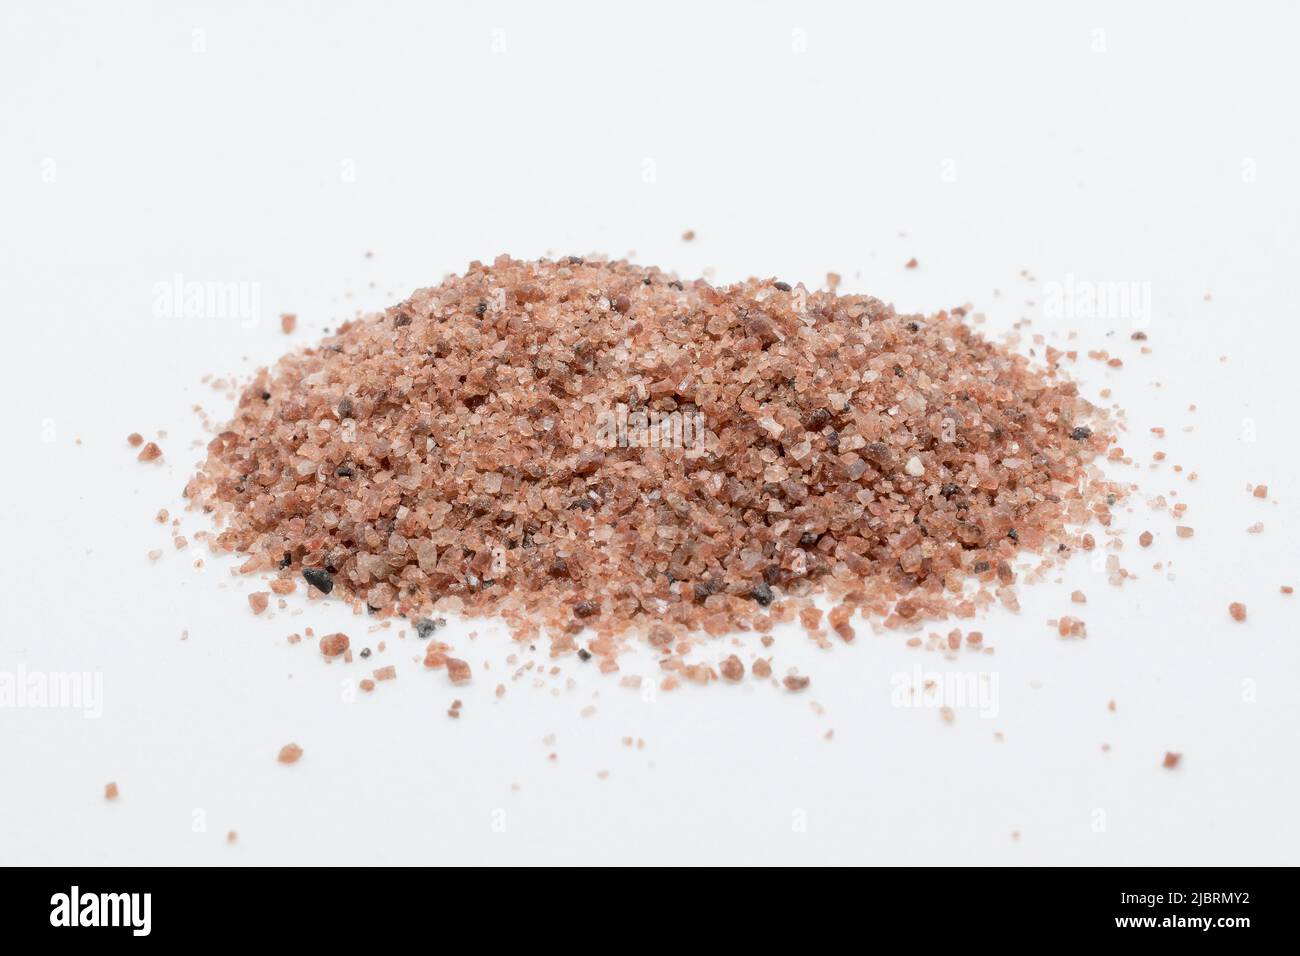 Black himalayan salt Stock Photo